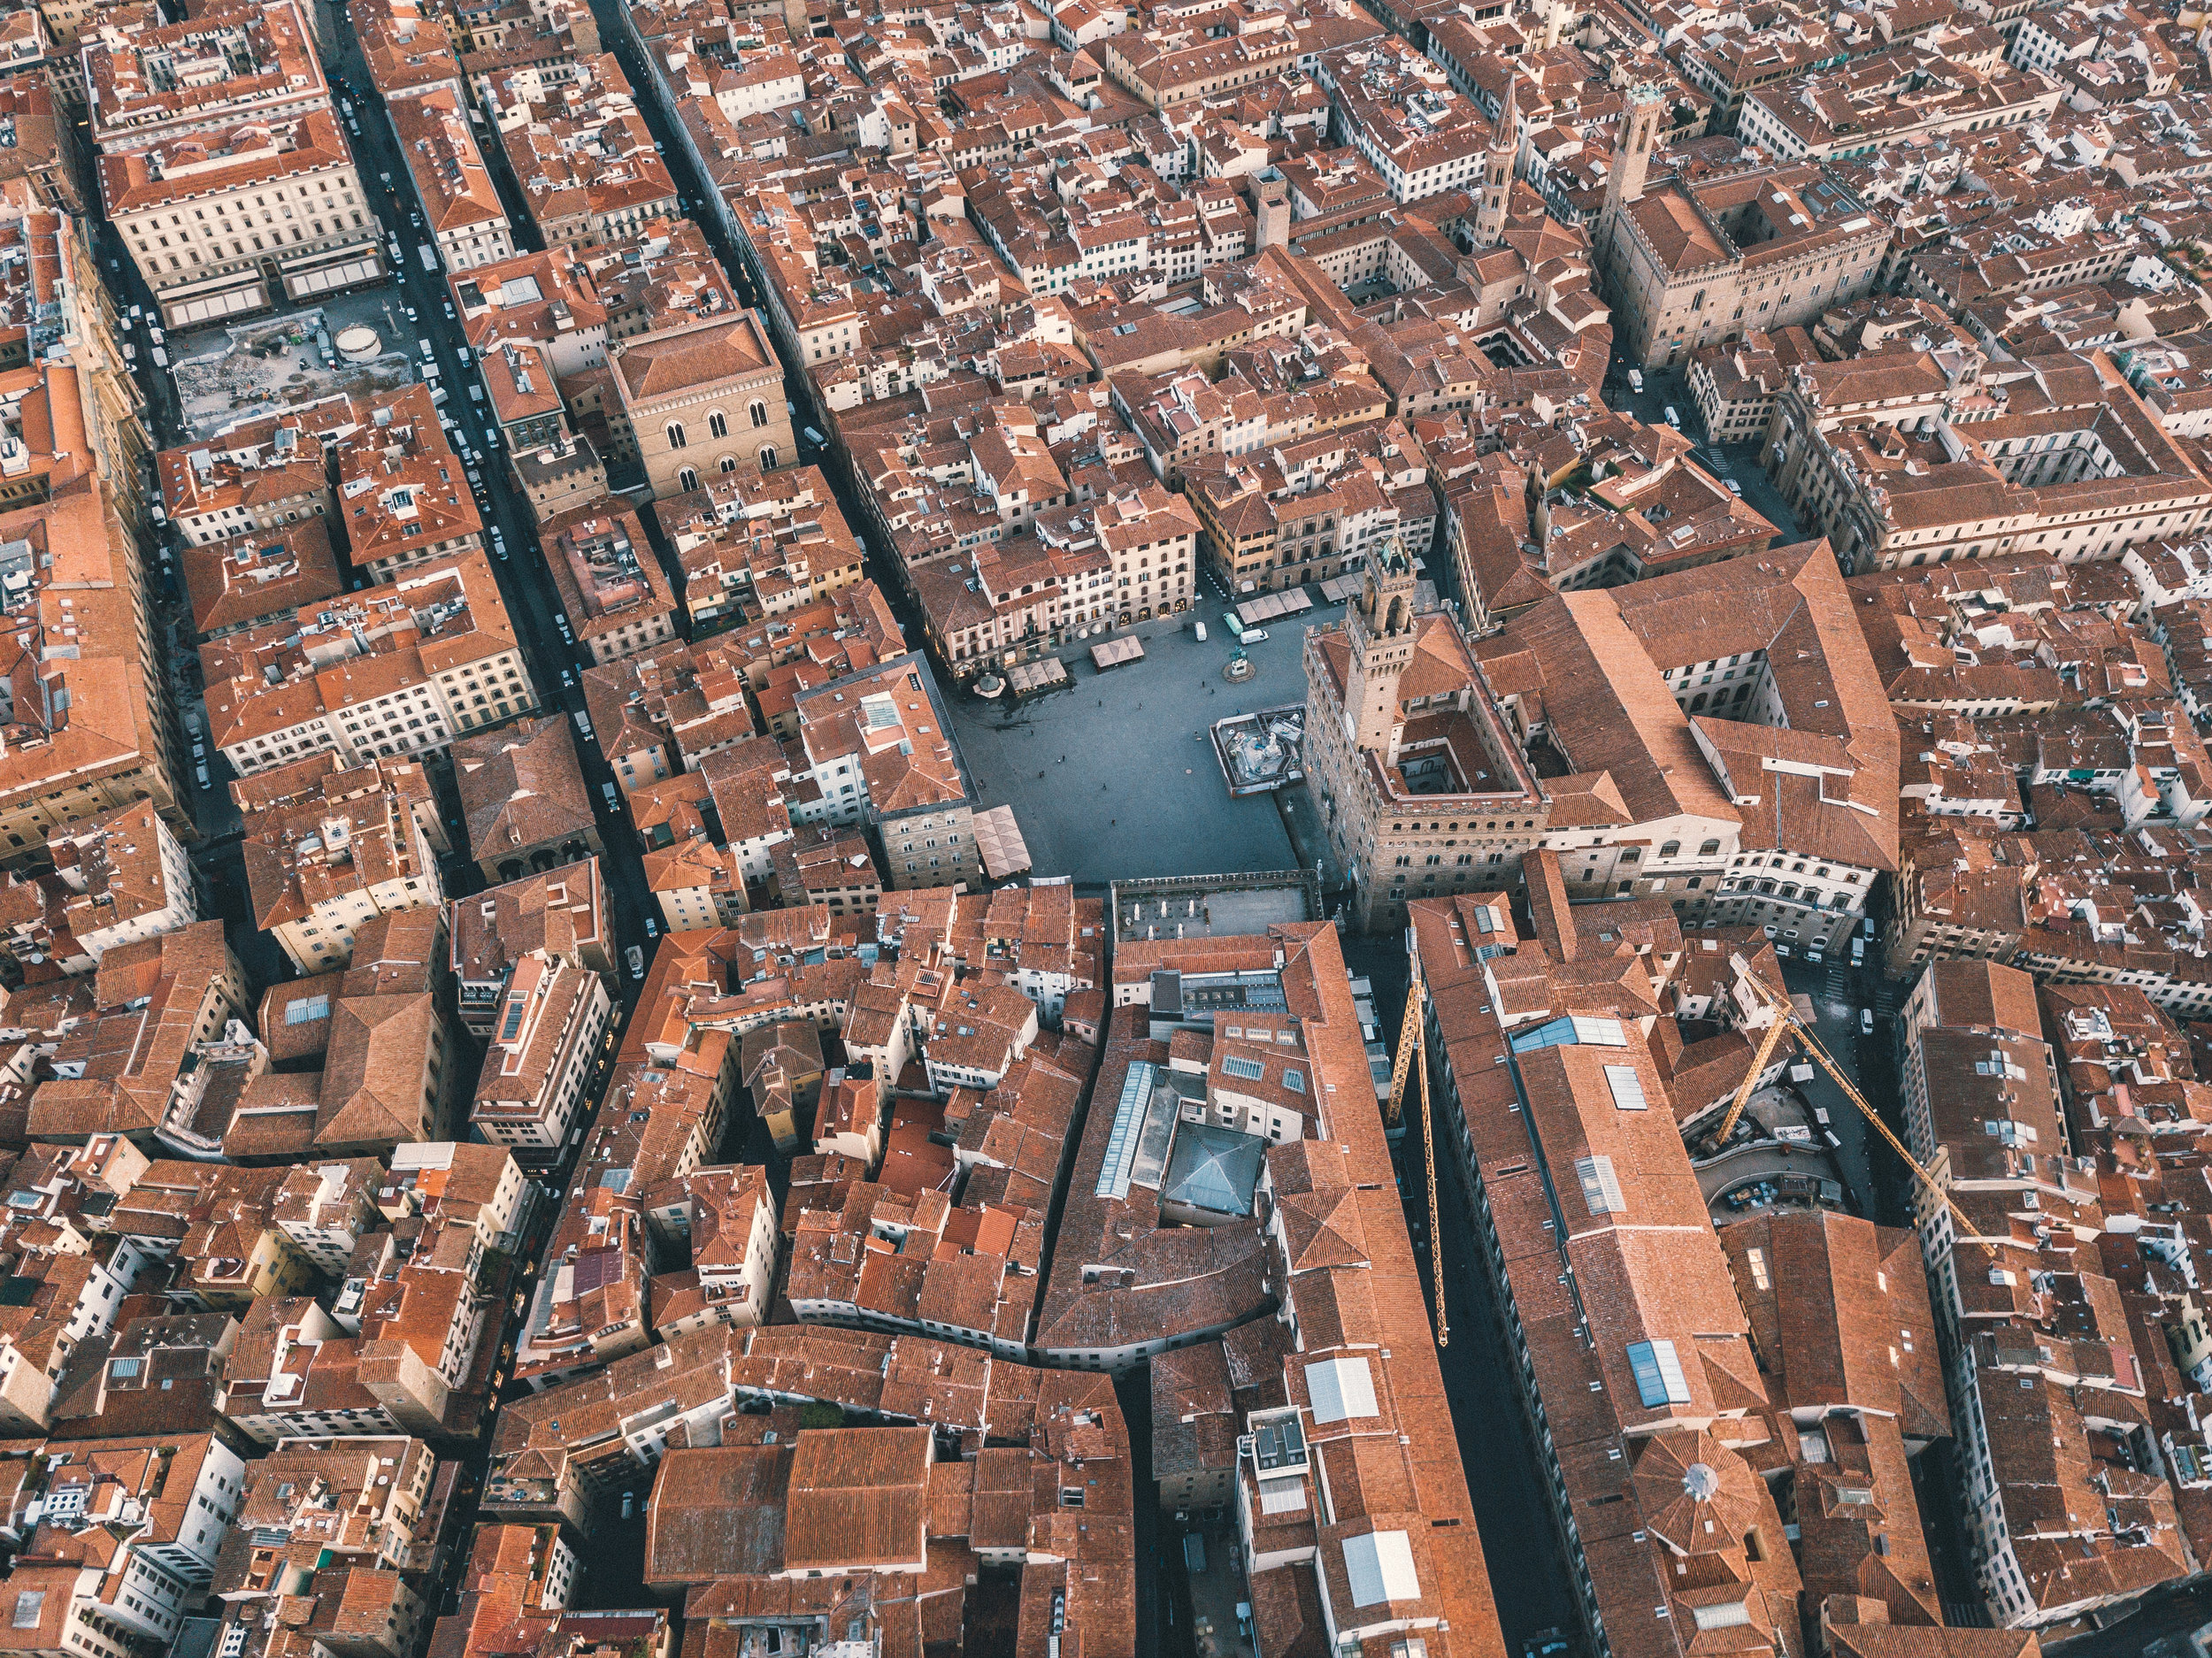 Piazza della Signoria with Palazzo Vecchio